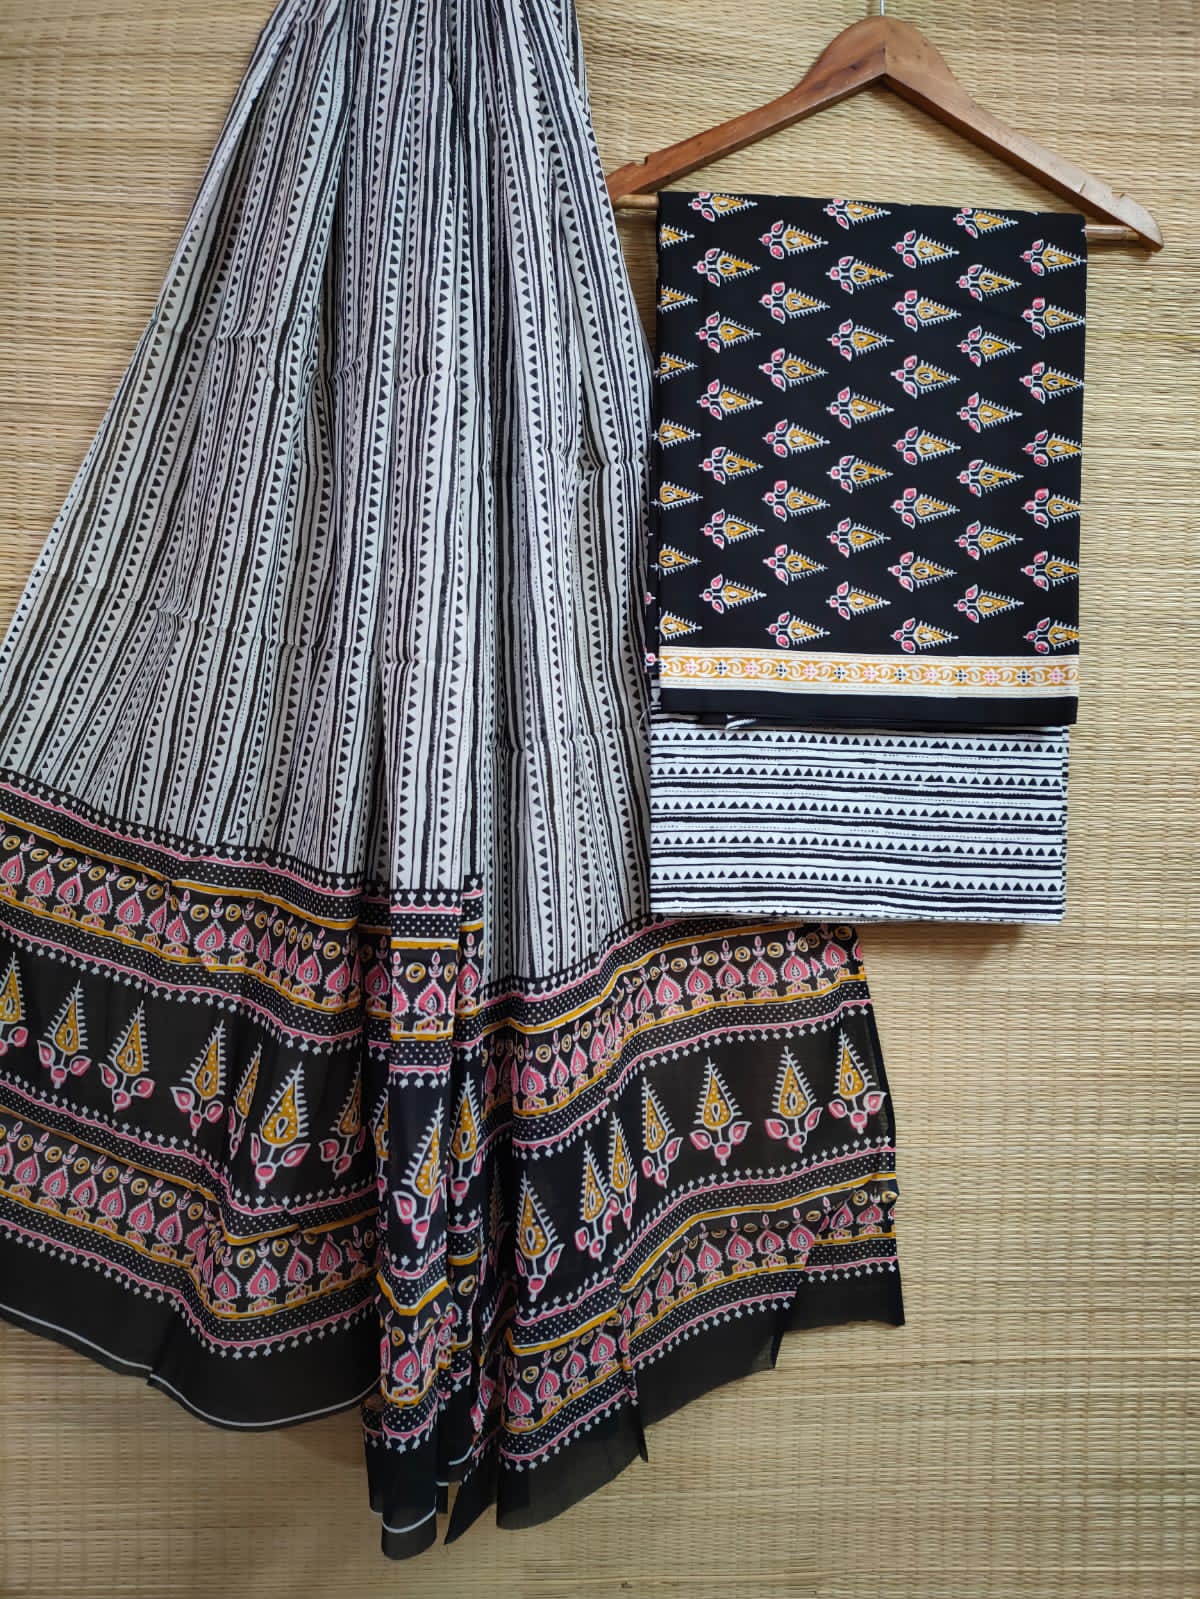 Hand Block Cotton Unstitched Salwar Suit With Cotton/Mulmul Dupatta - JBCM673